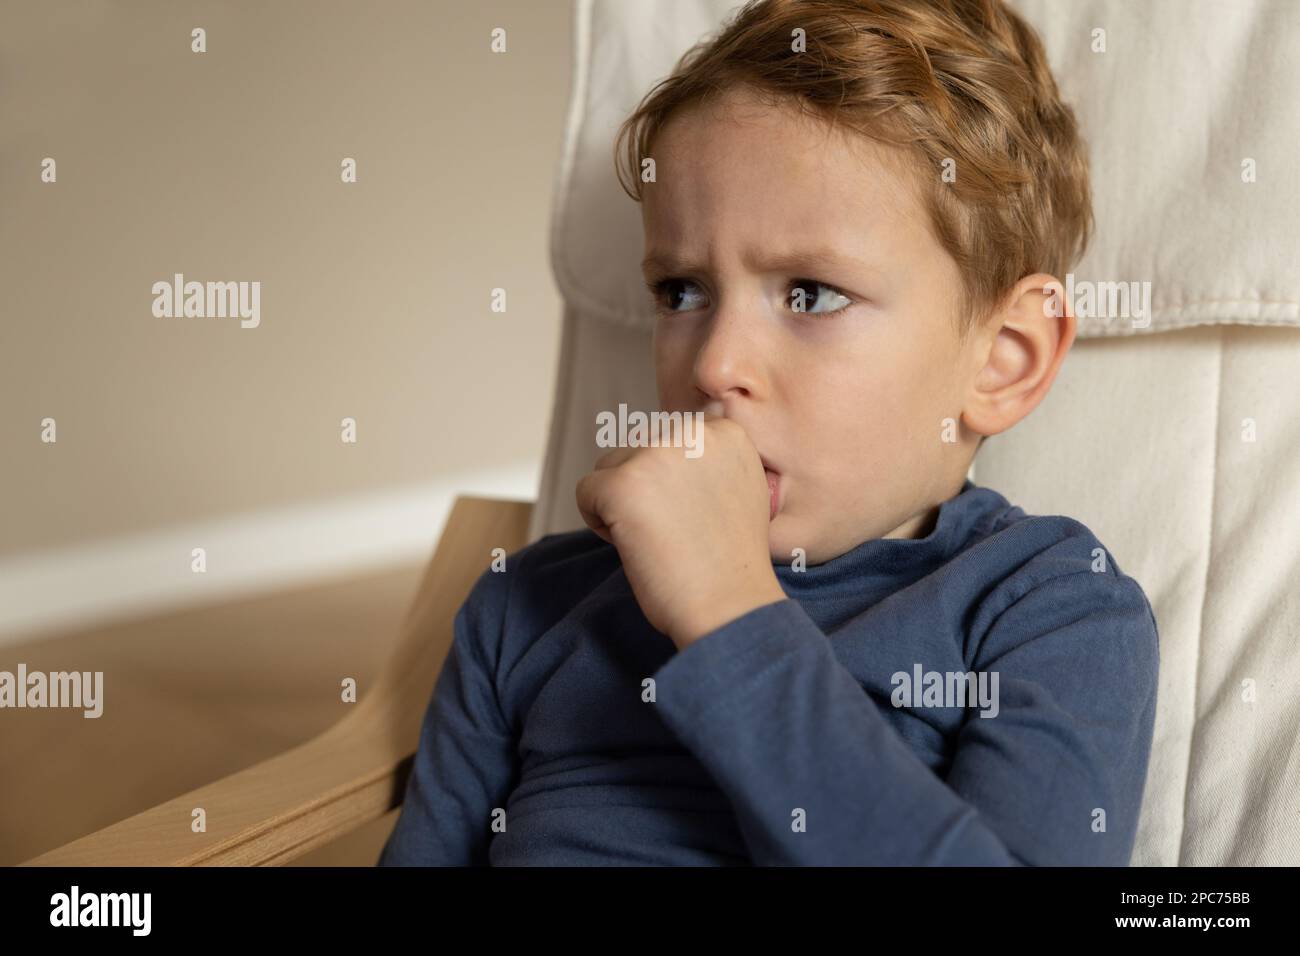 Un ragazzino si siede con un volto teso e succhia il pollice della mano sinistra. Foto Stock